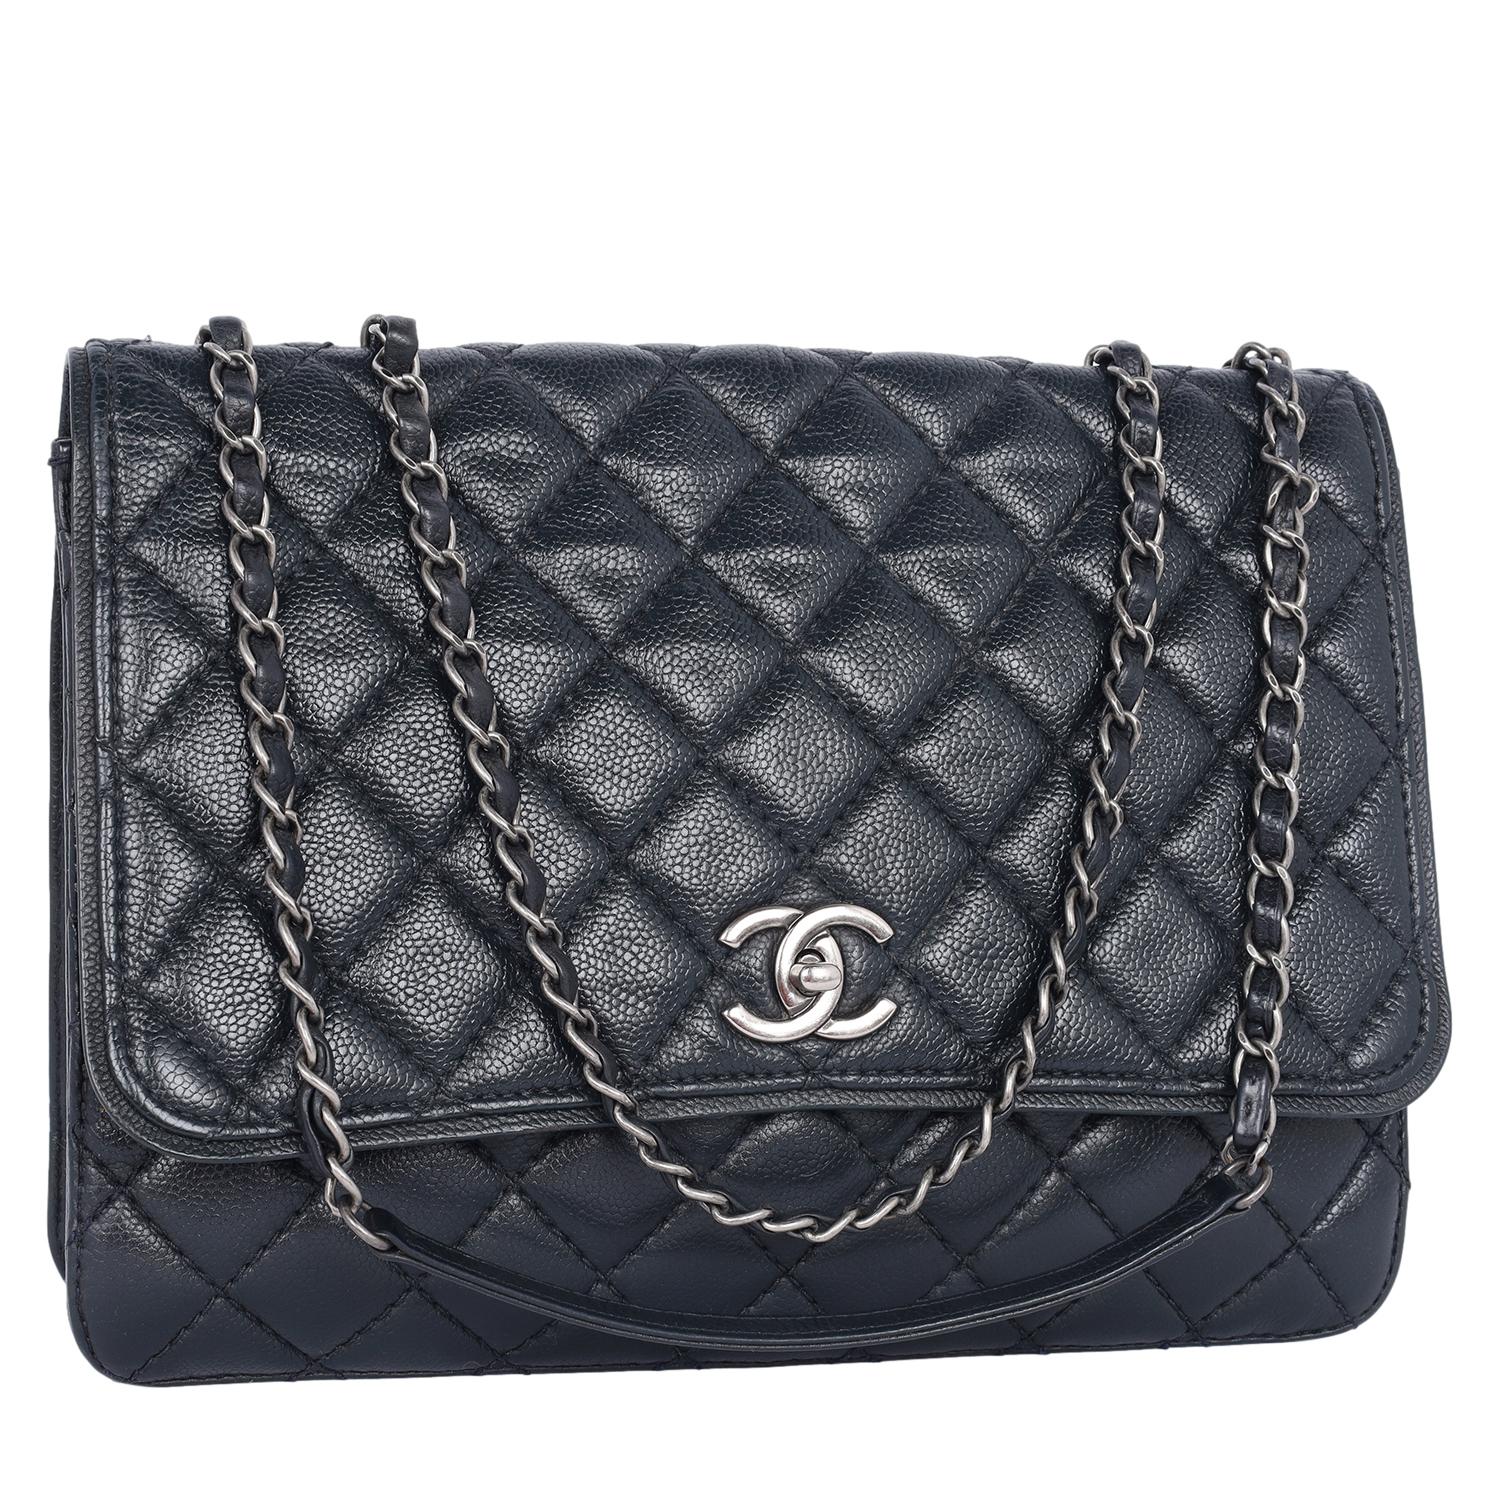 Authentische, gebrauchte Chanel gesteppte Matelasse CC Logo Caviar Umhängetasche in schwarz. Diese luxuriöse Tasche aus schwarzem, gestepptem Kaviarleder ist mit einem eingewebten Leder-Kettenriemen und antiken, silberfarbenen Beschlägen